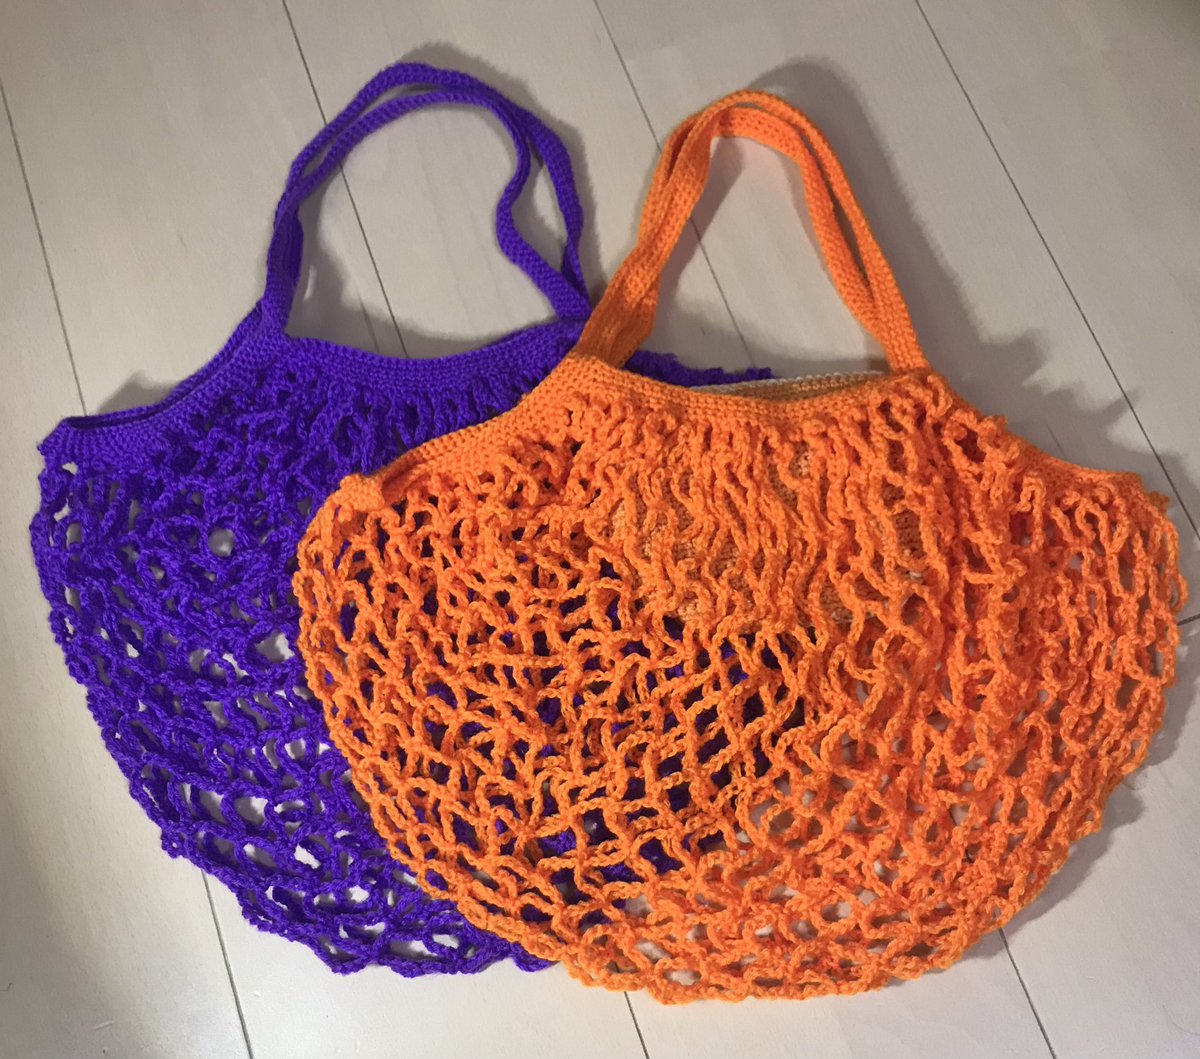 じゅんこ 編み物 ネット編みのエコバッグ 二つ目のオレンジが編めました 今度は内側にポケットをつけました ポケットの中にバッグを収納できます これで鍵やスマフォを入れてお買い物に行けます 編み図参考にさせていただきました ハマナカ